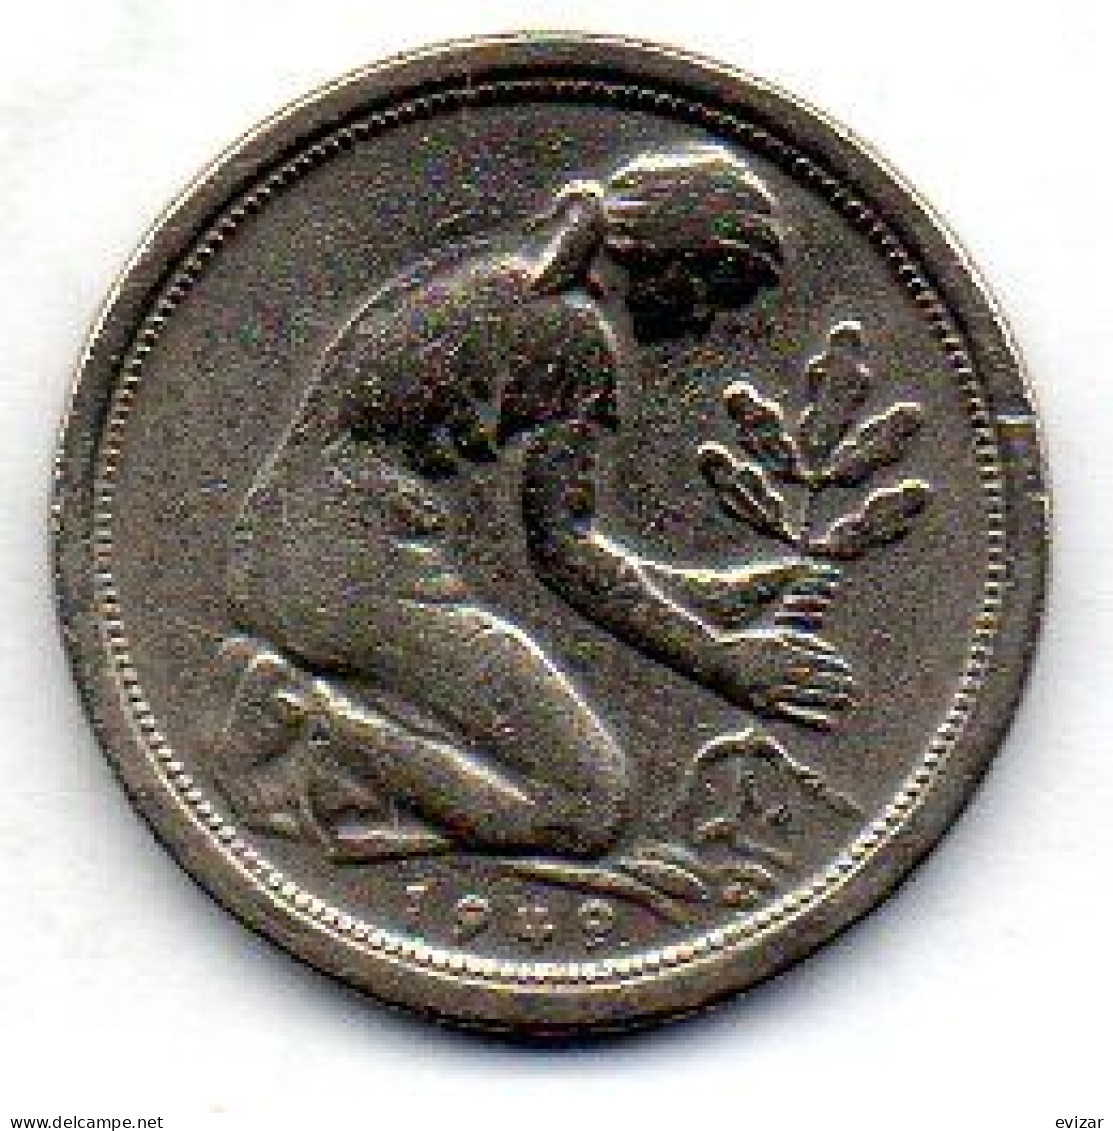 GERMANY - FEDERAL REPUBLIC, 50 Pfennig, Copper-Nickel, Year 1949-G, KM # 104 - 50 Pfennig